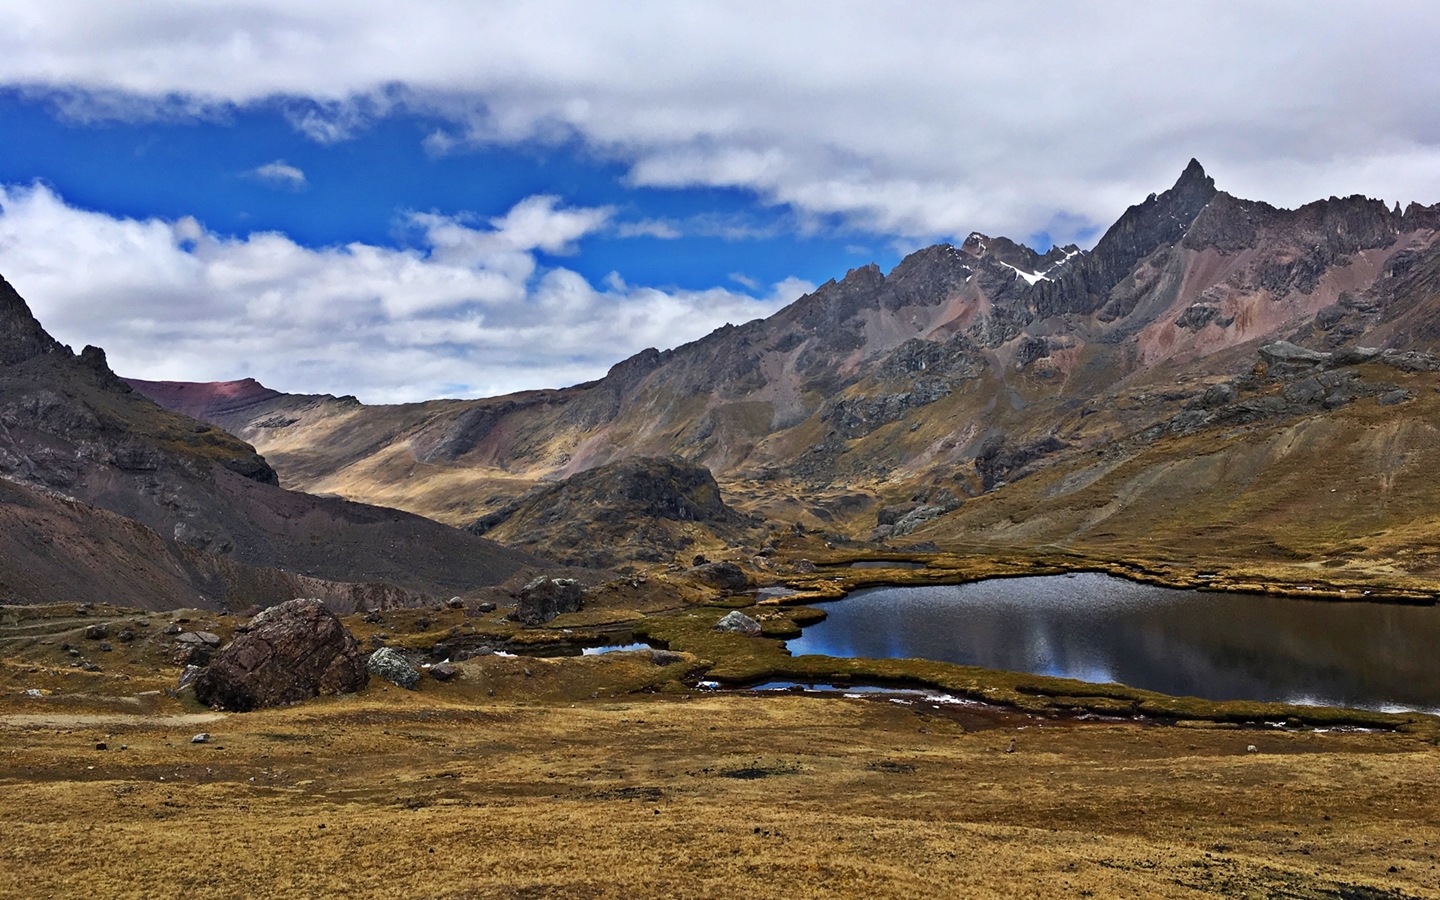 The Ausangate trekking route passes by the beautiful Laguna Puka Qocha